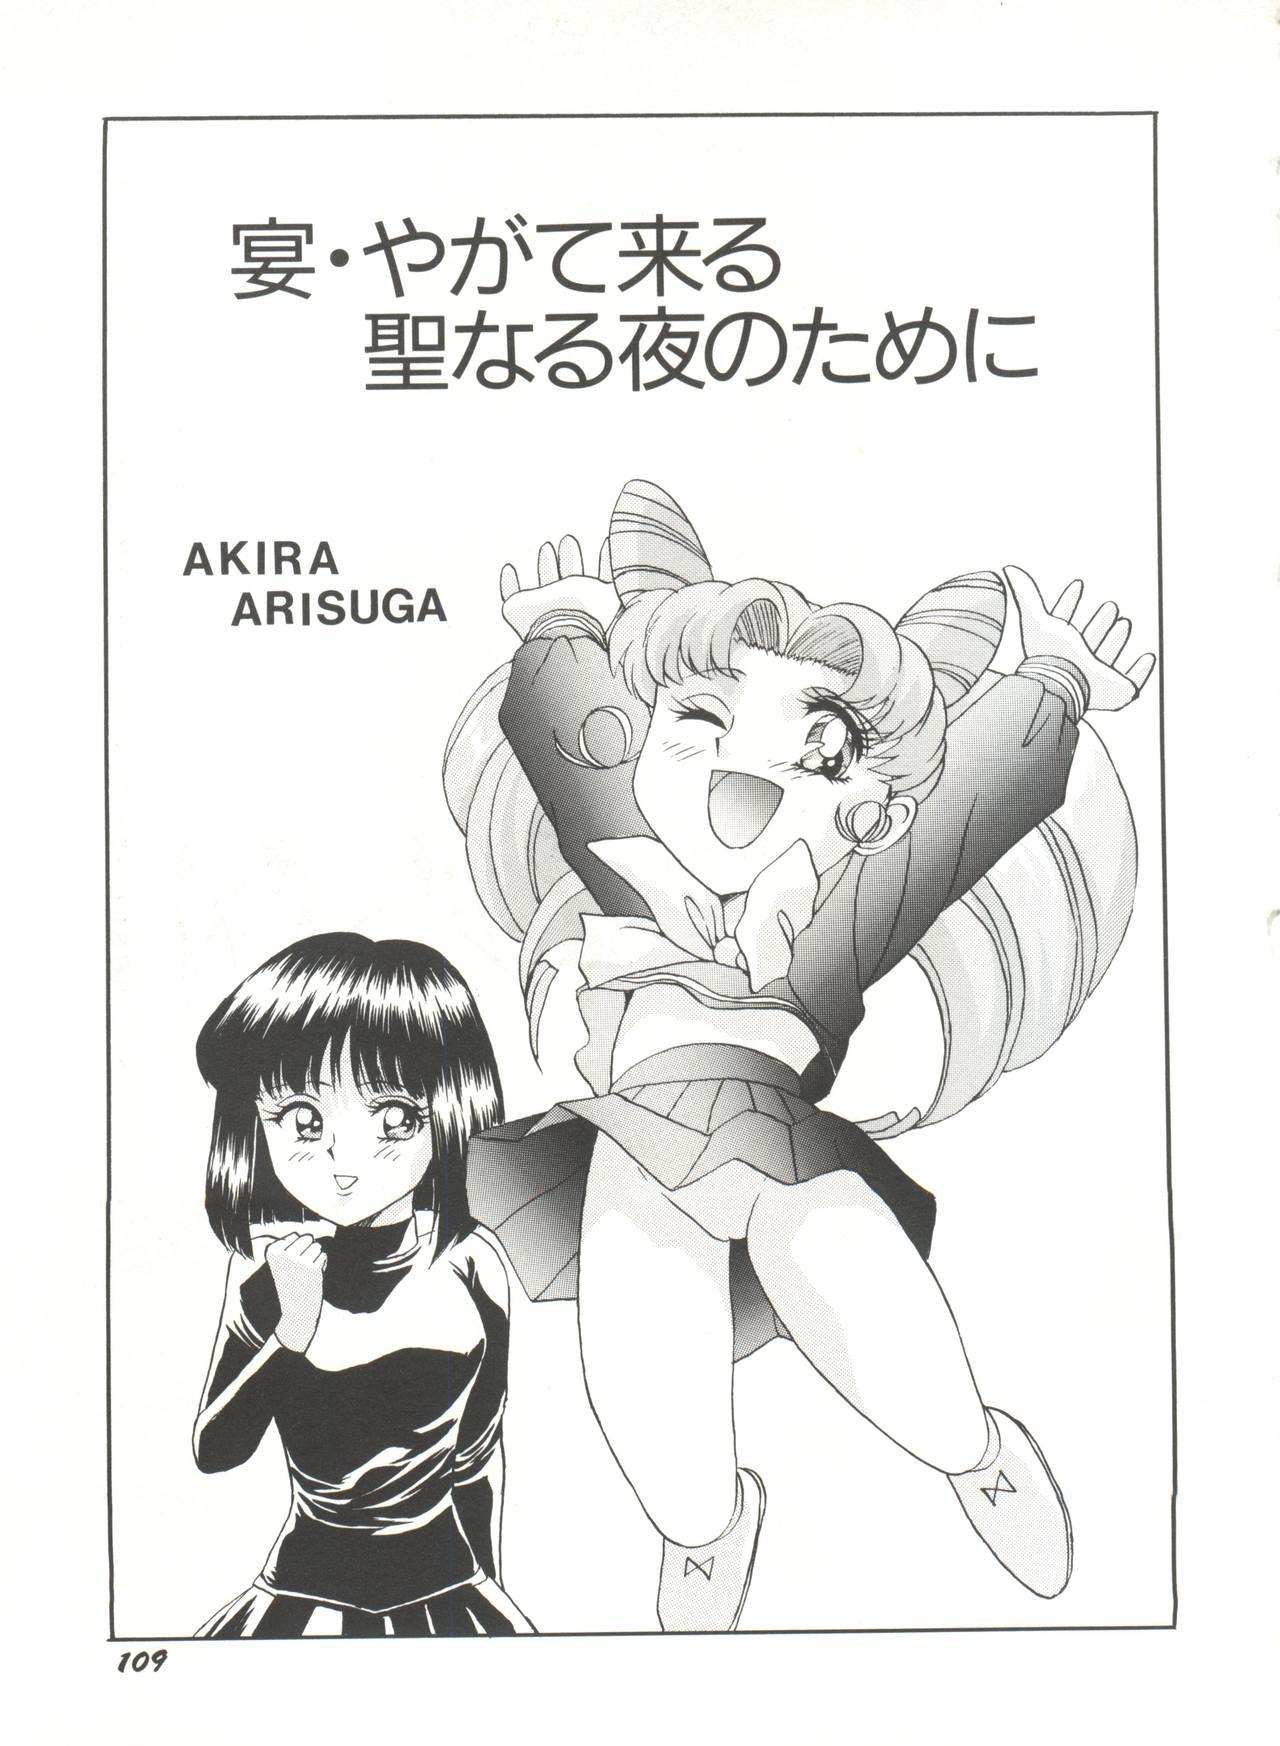 Bishoujo Doujinshi Anthology 16 - Moon Paradise 10 Tsuki no Rakuen 113